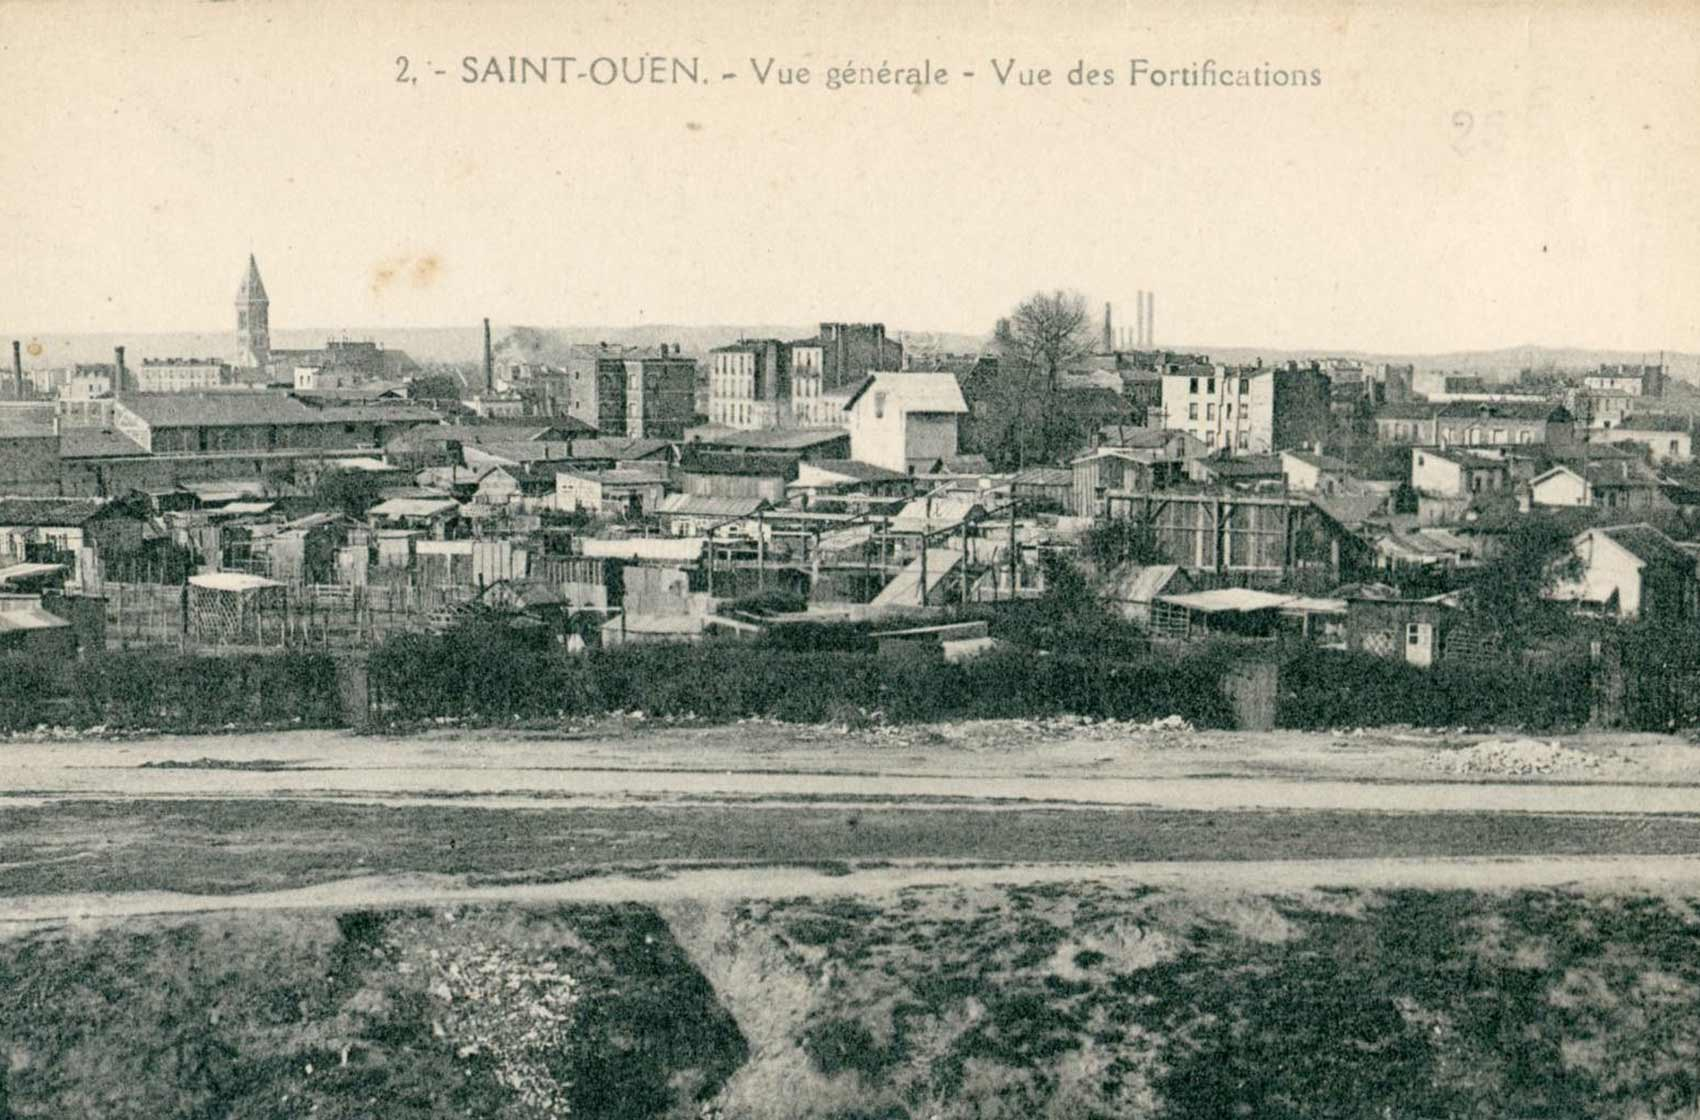 Abeille 2 - St Ouen - Vue générale - Vue des Fortifications